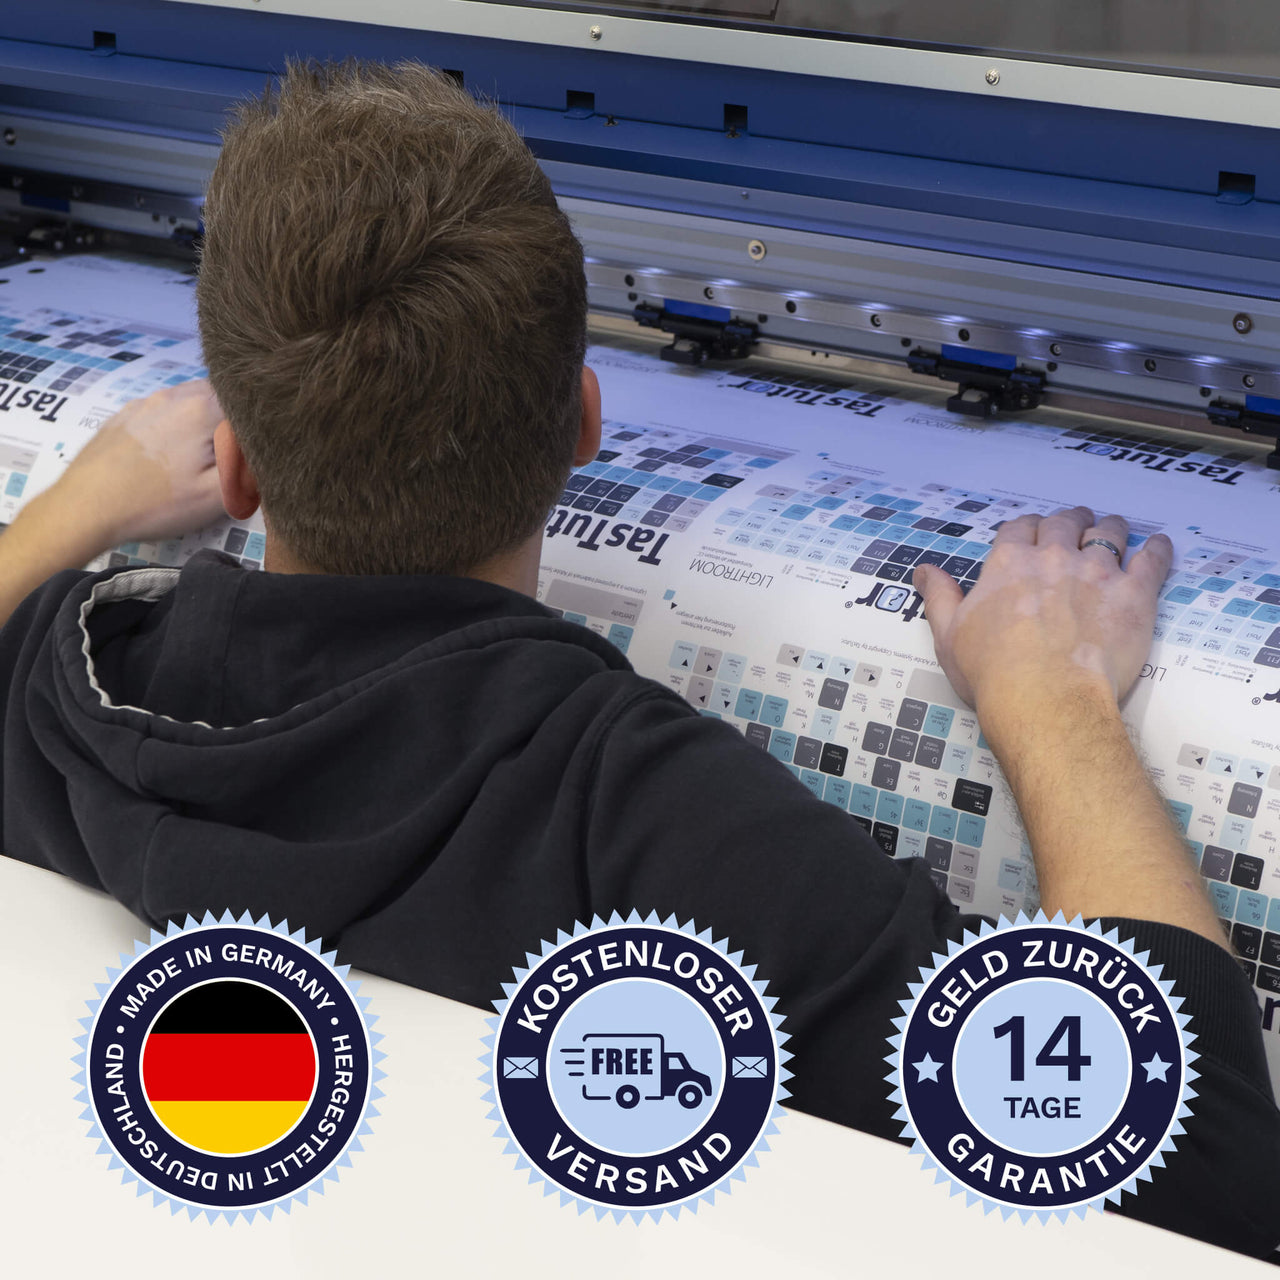 Edius Tastaturaufkleber werden in Deutschland hergestellt. Der Versand ist kostenlos und wir gewährleisten 14 Tage Geld zurück Garantie | TasTutor